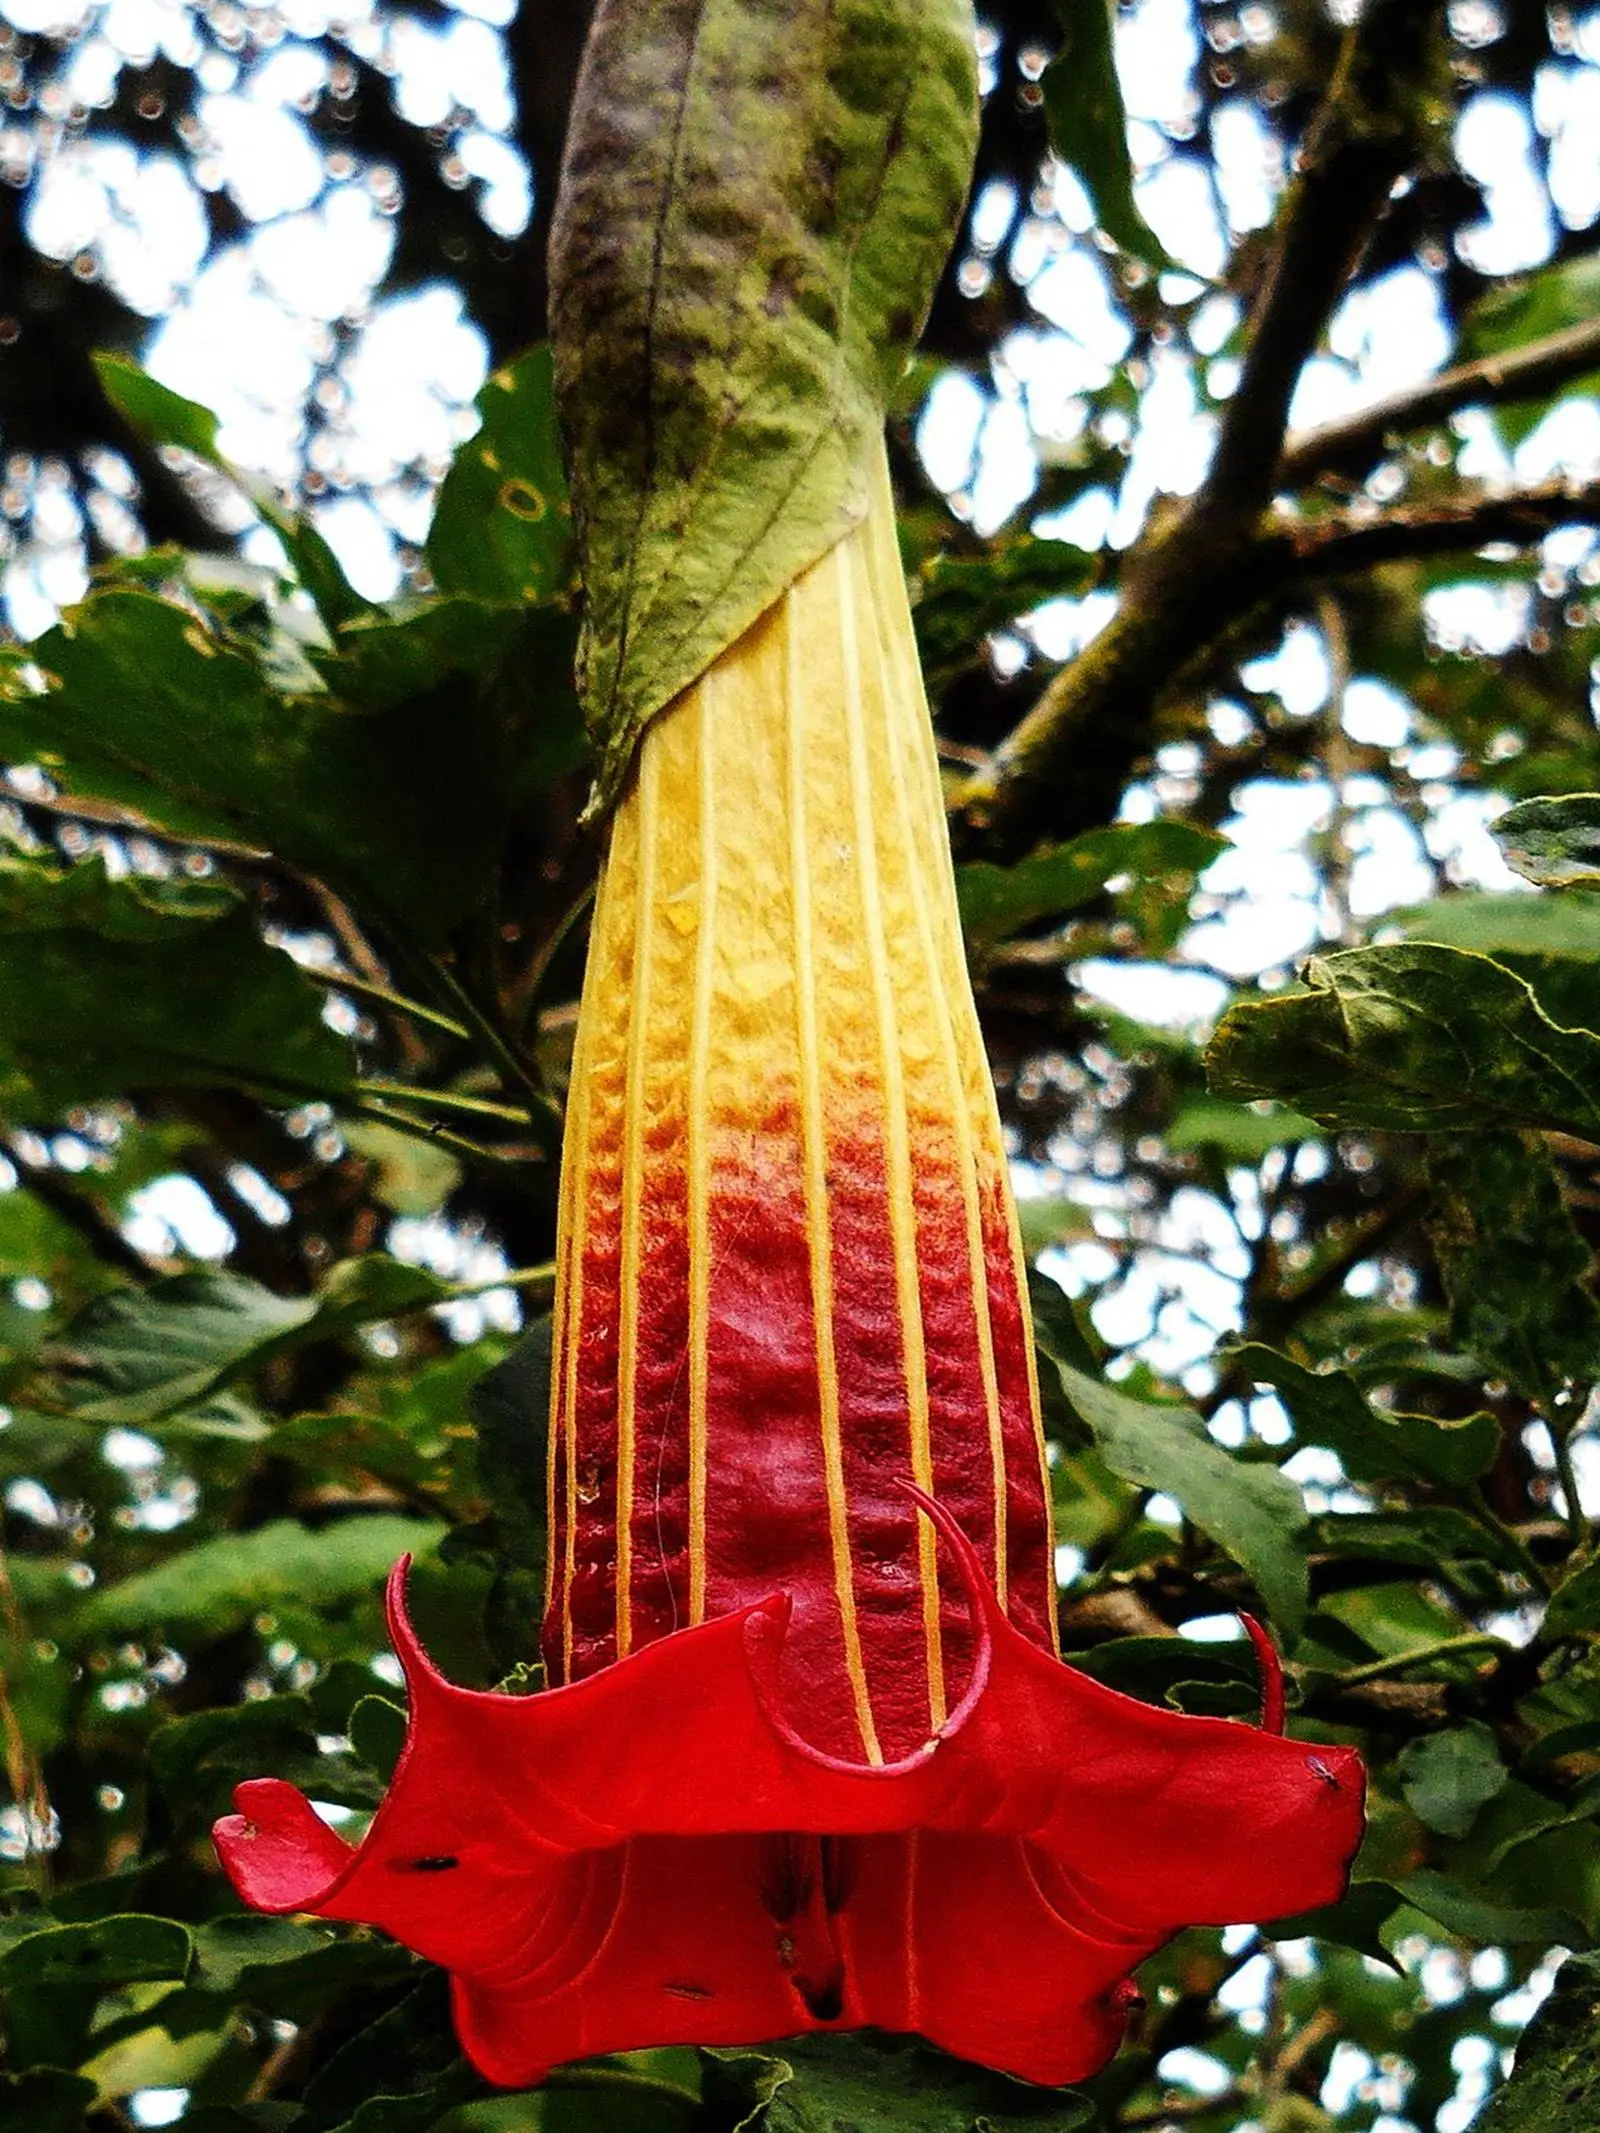 flora del oriente ecuatoriano con nombres - Cuál es la flora del oriente ecuatoriano